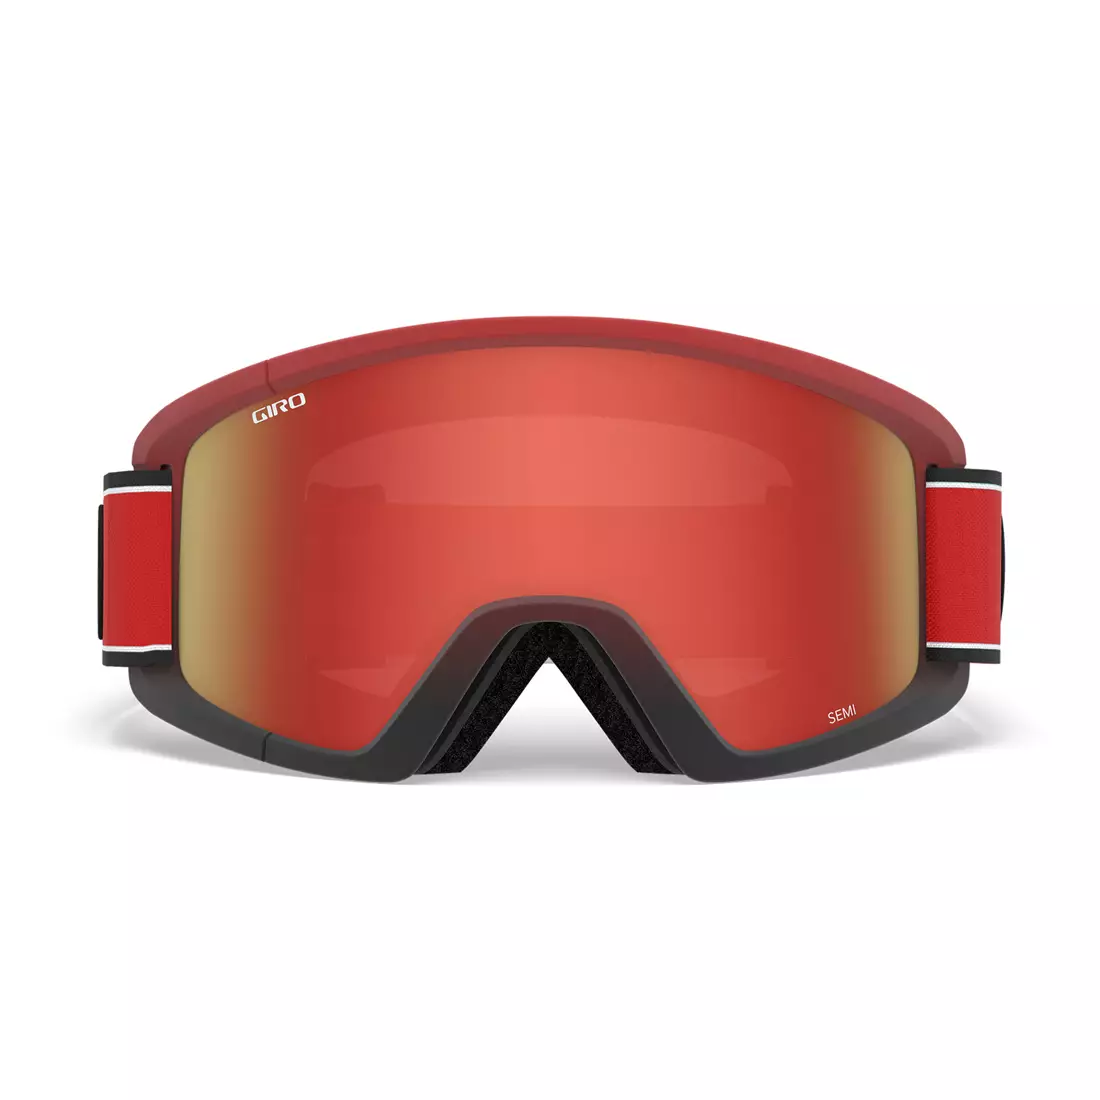 Zimní lyžařské / snowboardové brýle GIRO SEMI RED ELEMENT GR-7105390